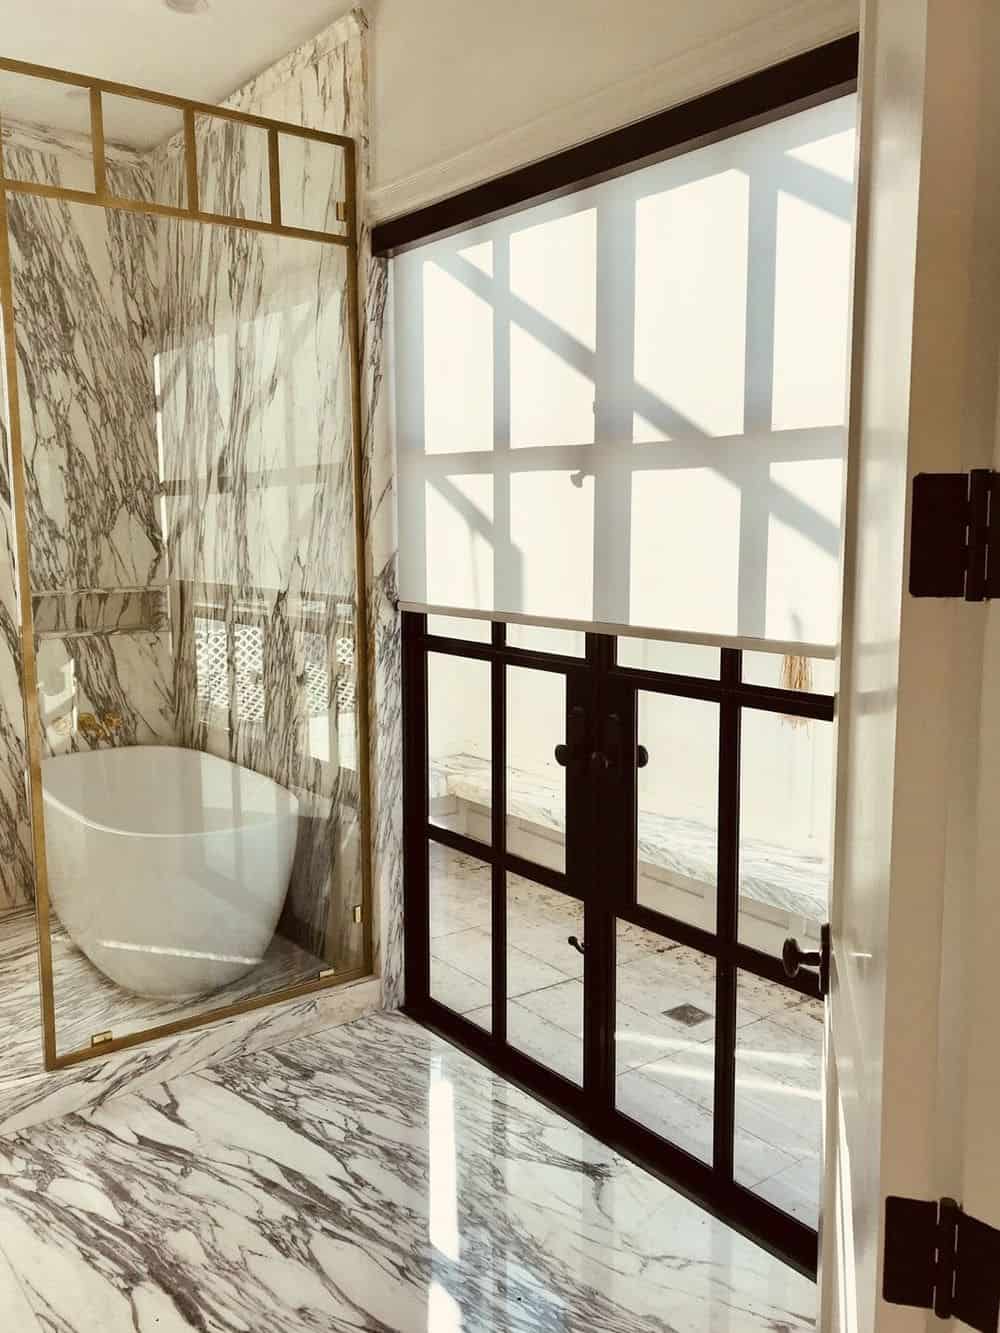 这间主浴室拥有豪华的大理石瓷砖地板和墙壁。它还提供一个独立的浴缸。房间的窗户以窗帘为特色。